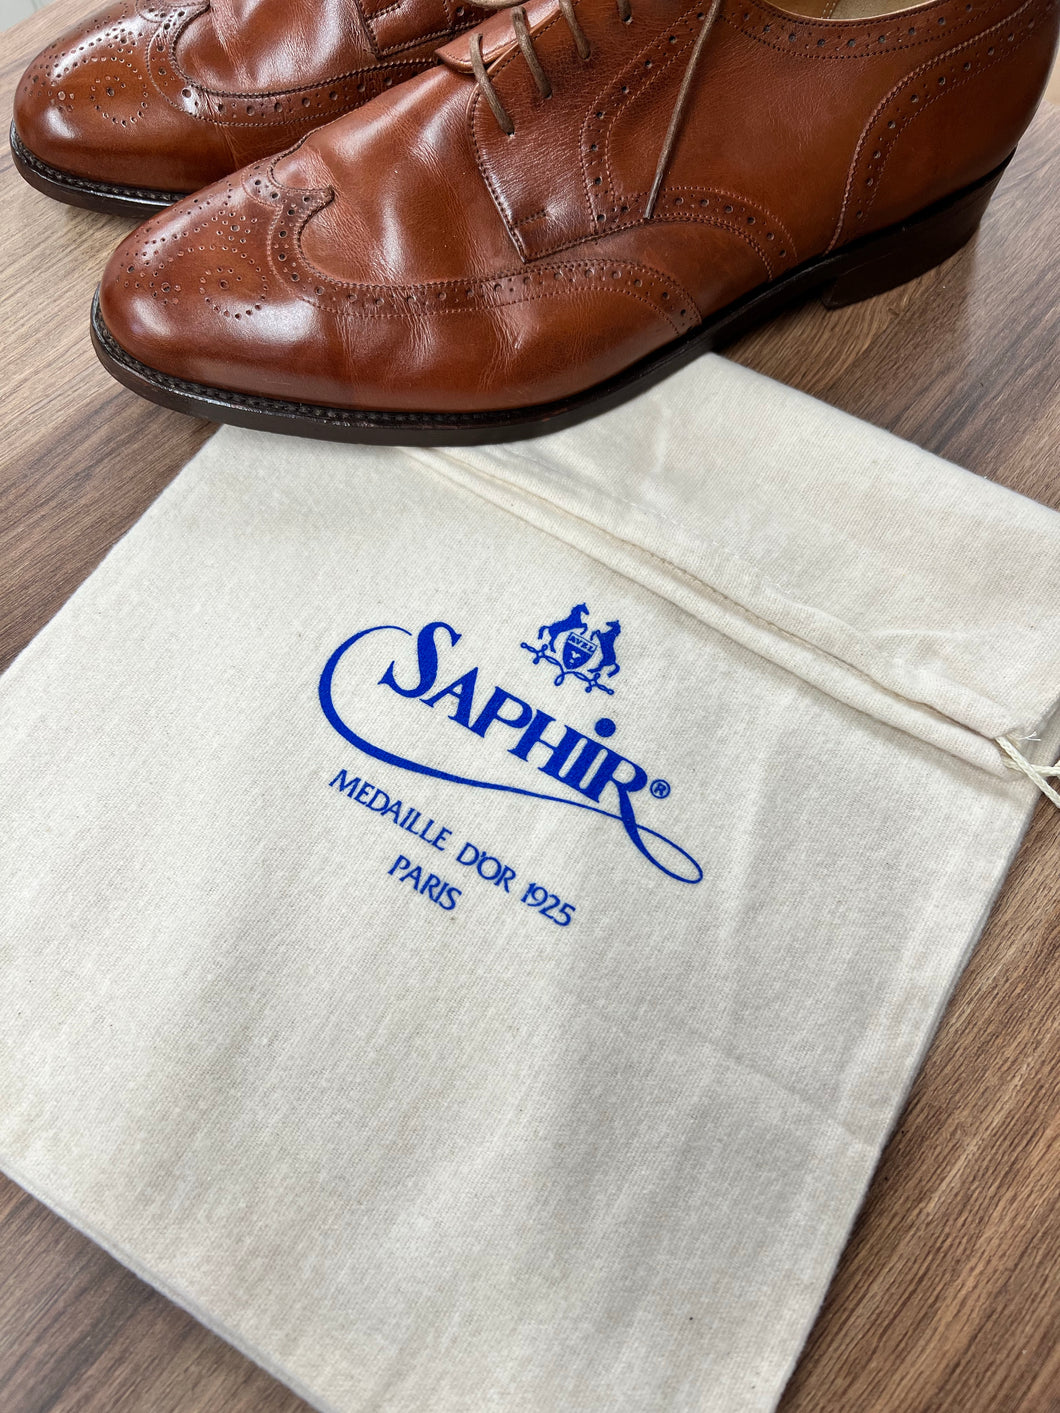 Saphir cotton shoe bags